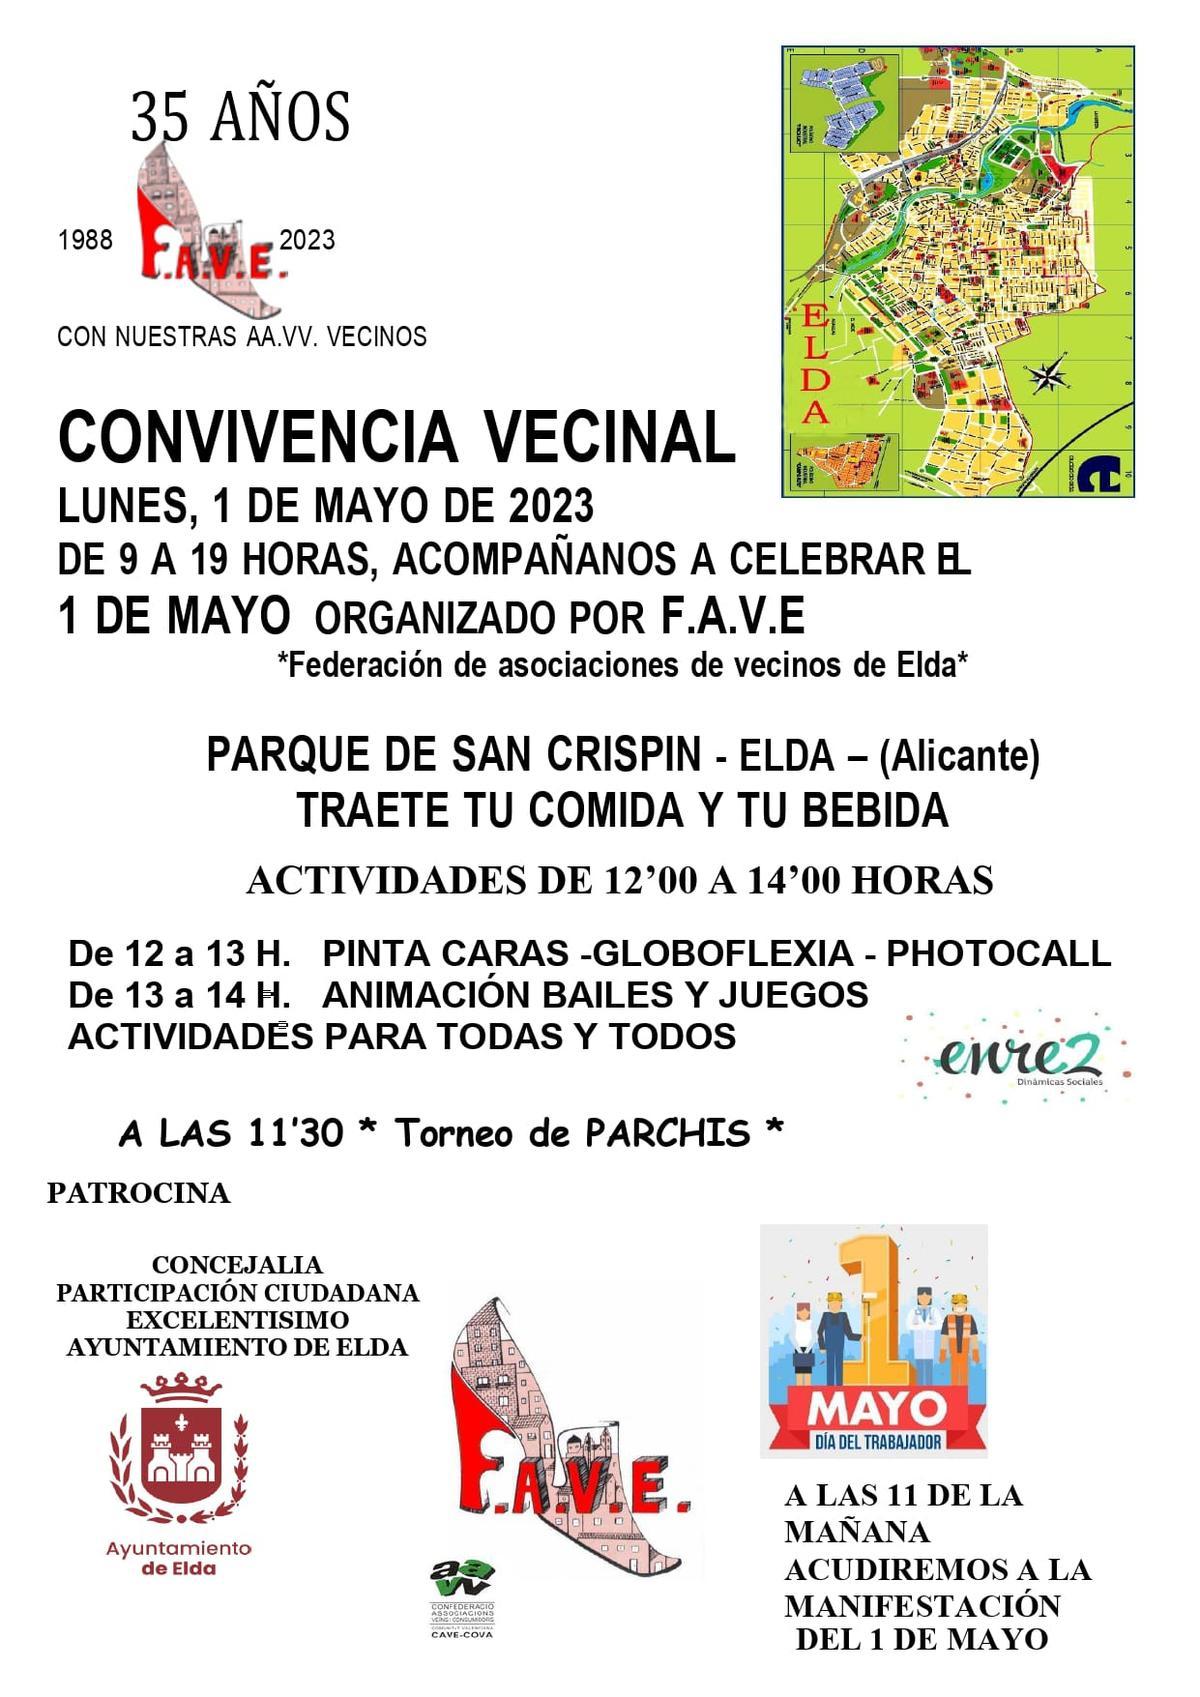 El cartel de convivencia vecinal para celebrar el Día del Trabajador en Elda.